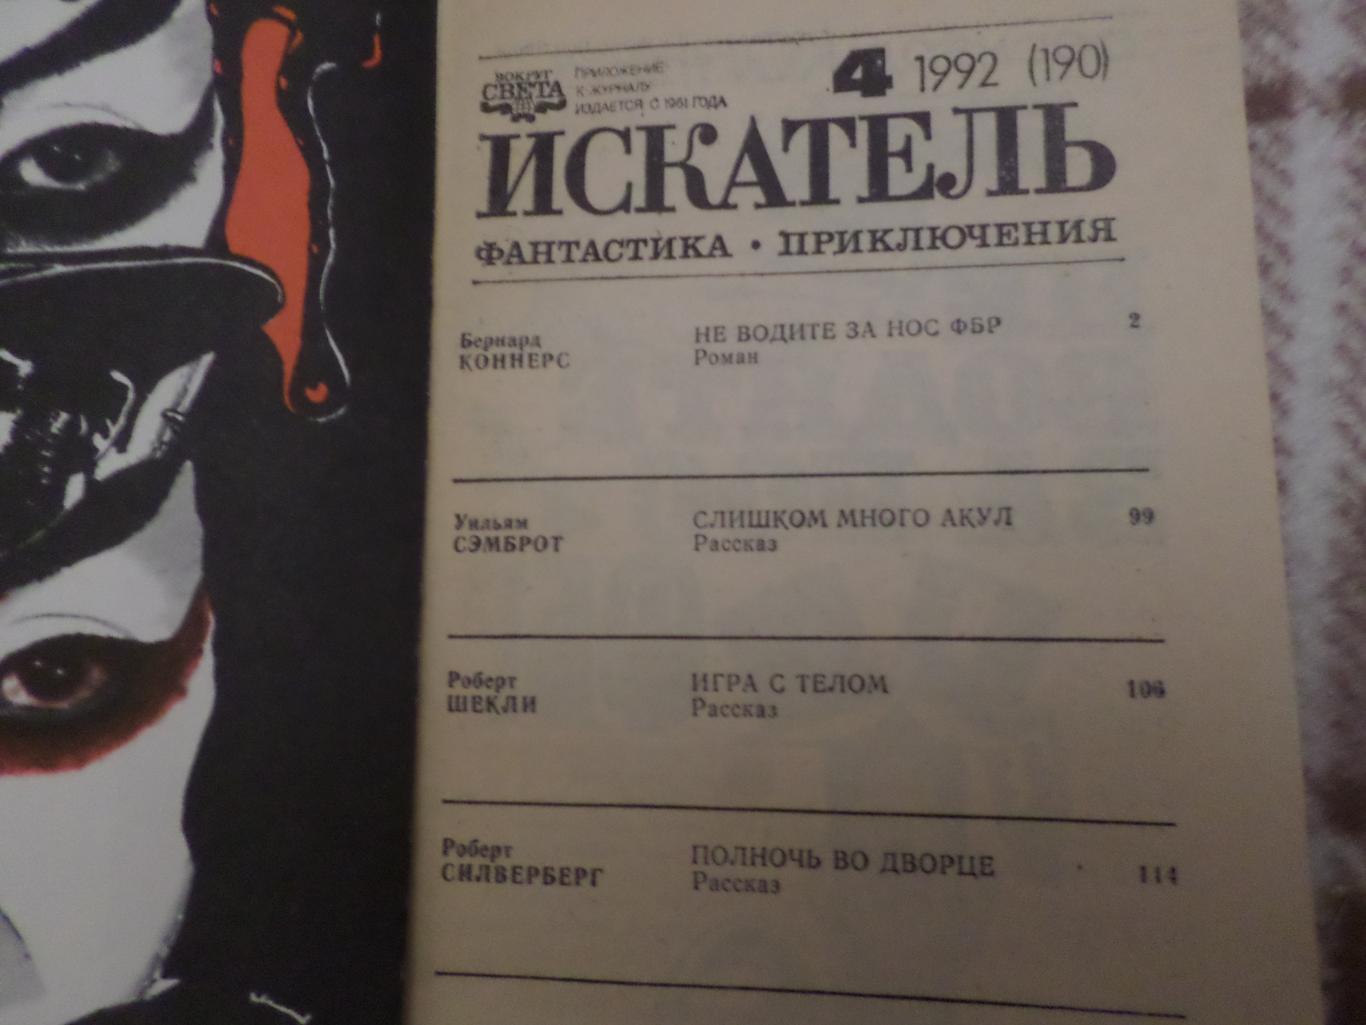 журнал Искатель ( фантастика, приключения) номера 4 и 6 за 1992 г 2